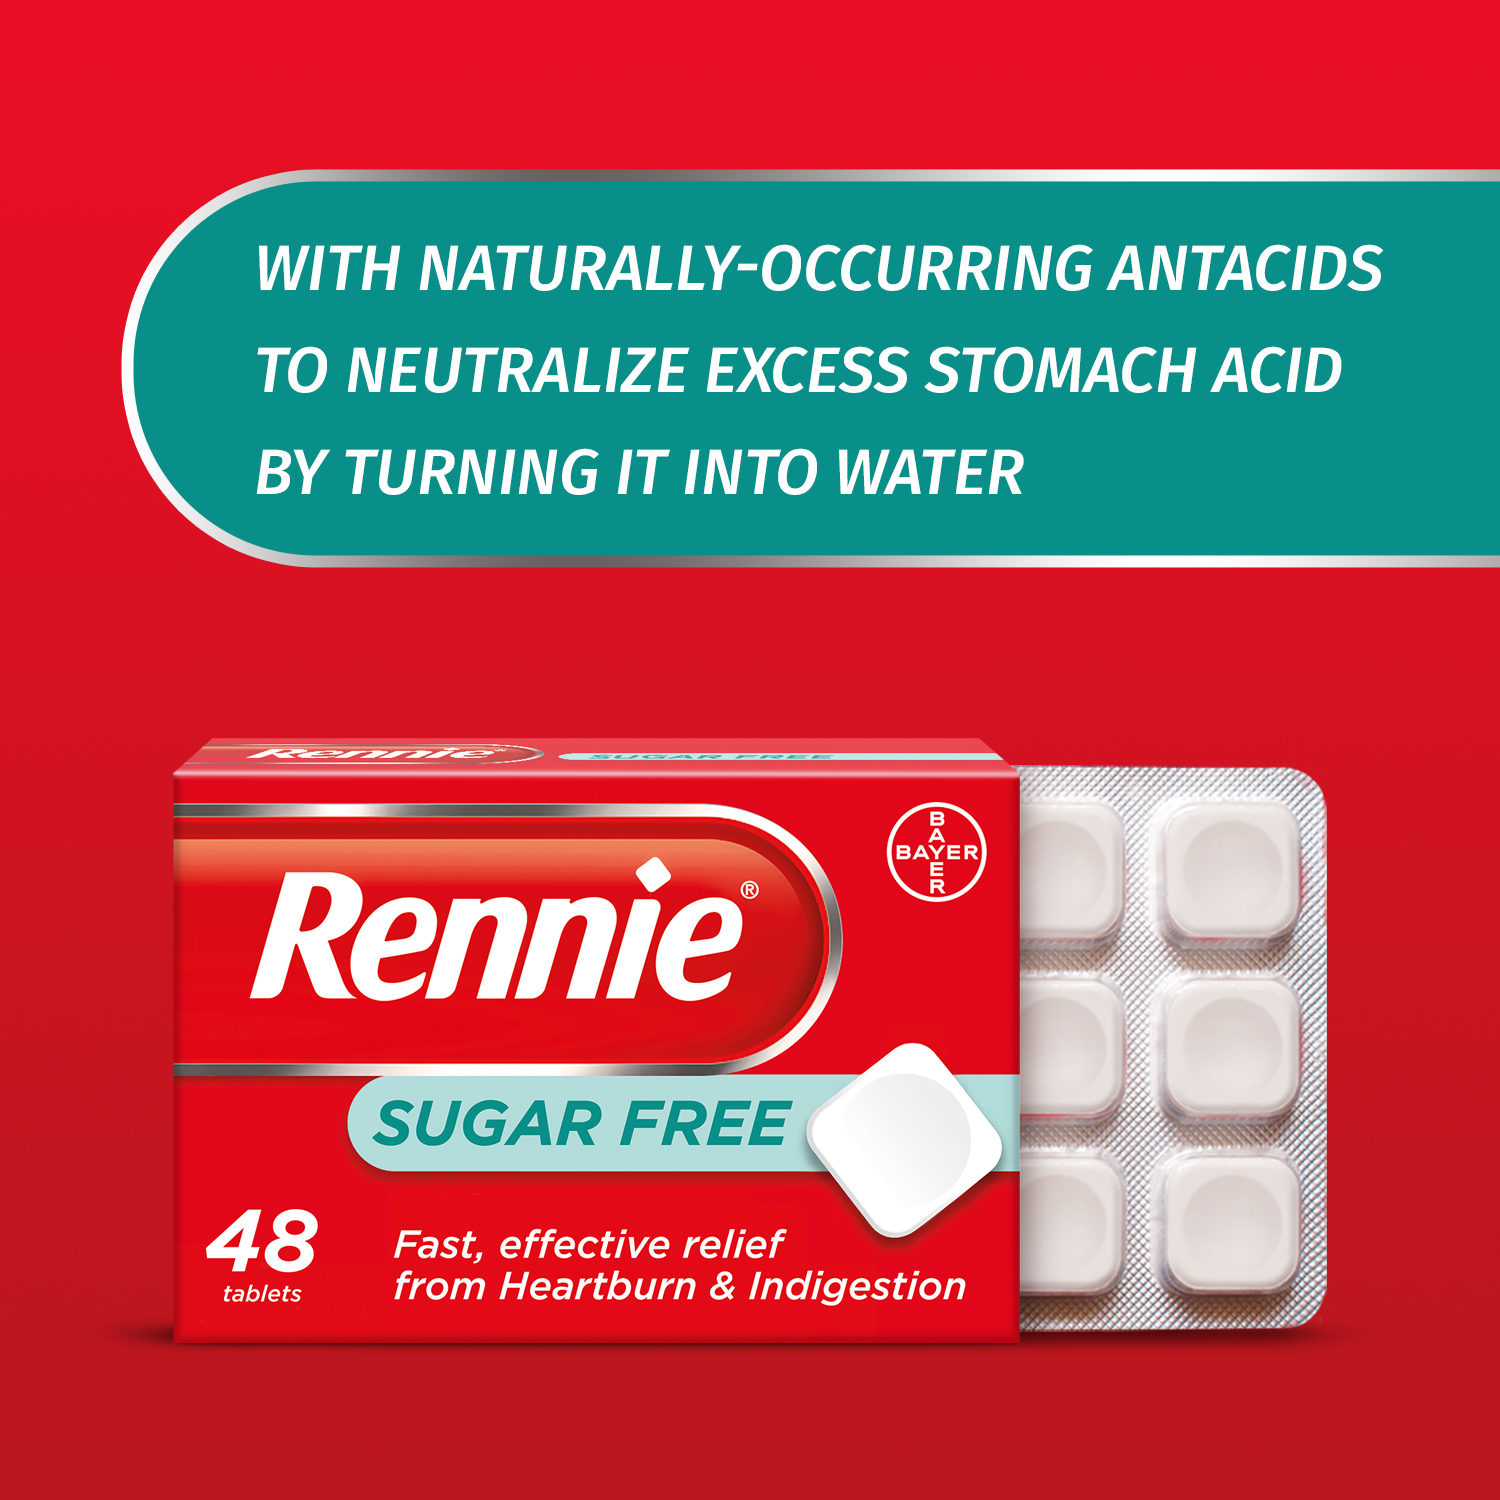 5.Bayer_eCommerce_Rennie_Sugar_Free_Ingredients